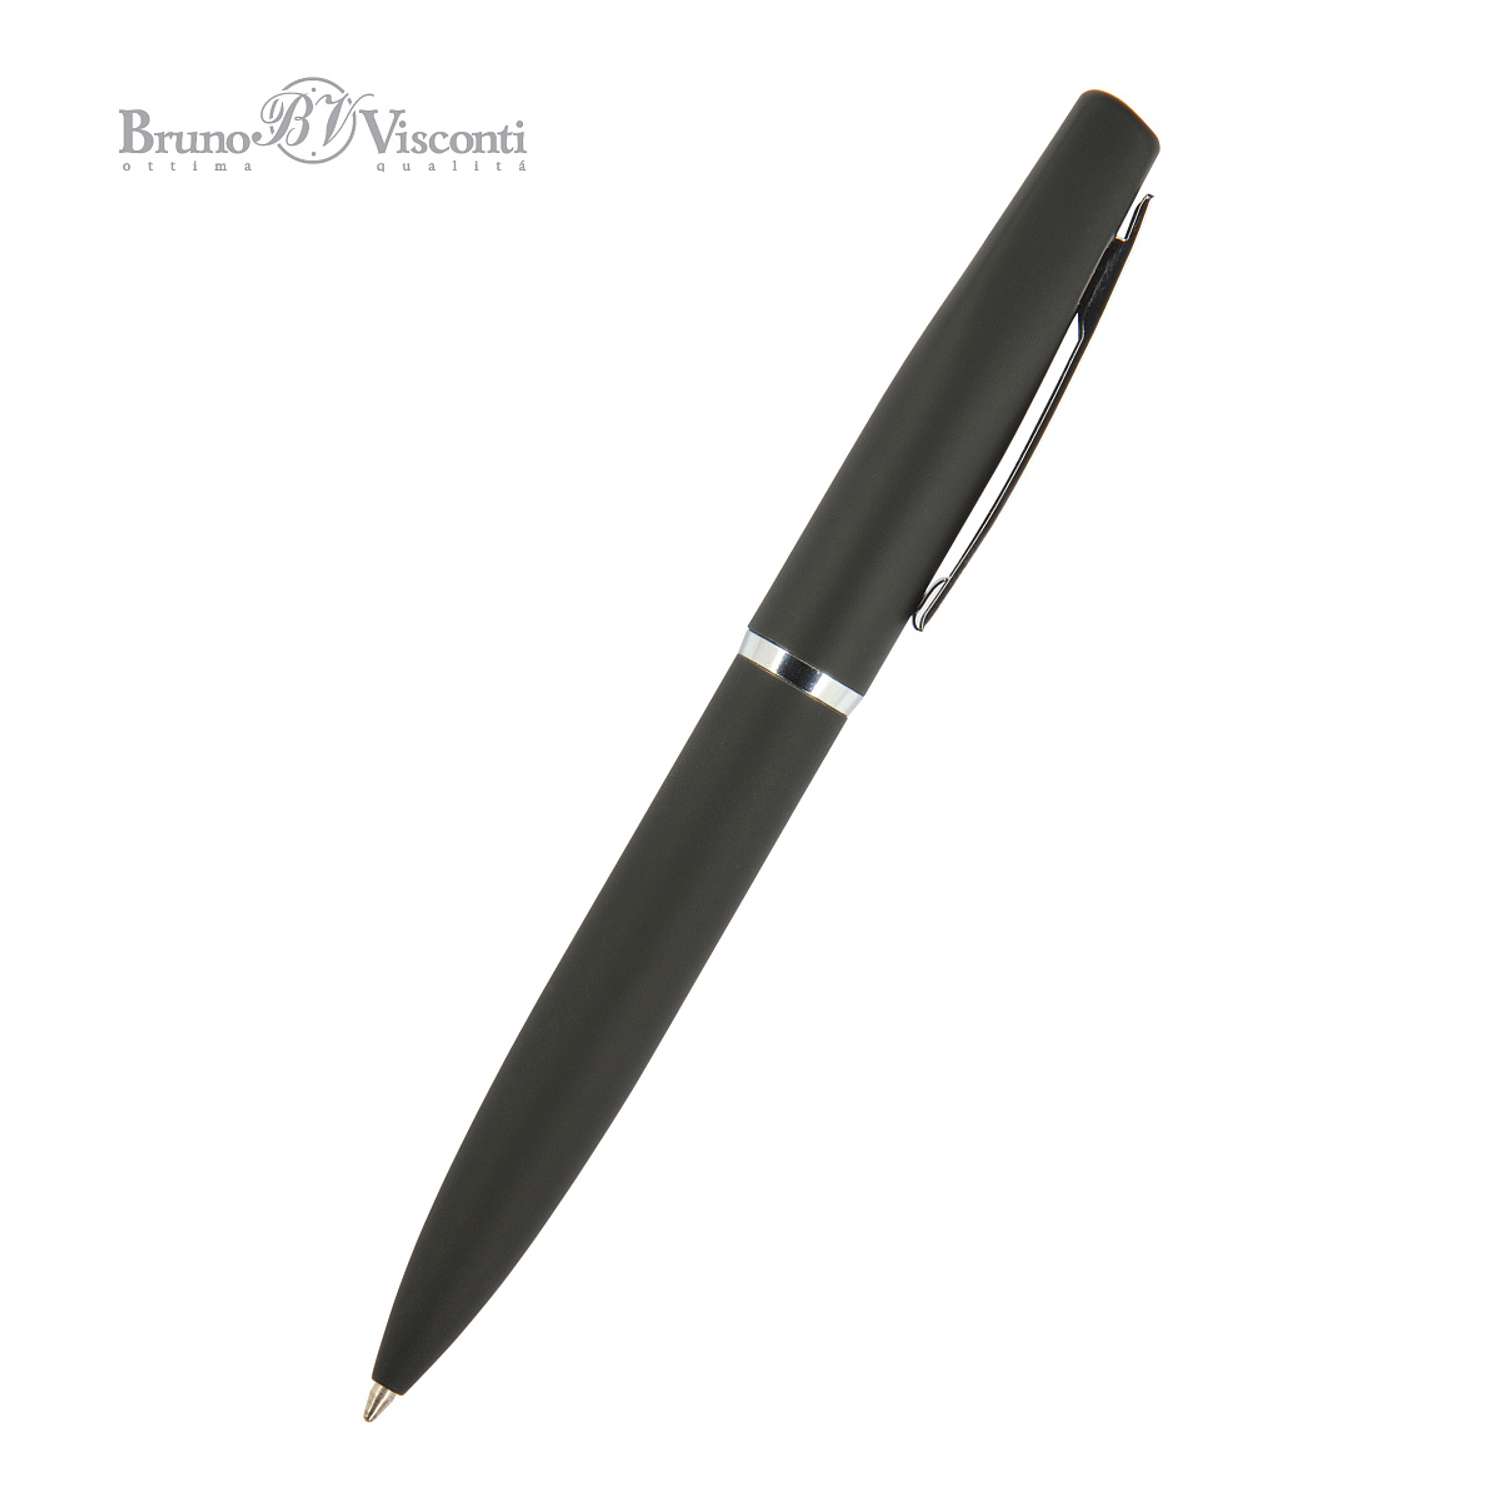 Ручка шариковая Bruno Visconti Автоматическая синяя portofino цвет корпуса черный 1 мм в футляре из экокожи - фото 4